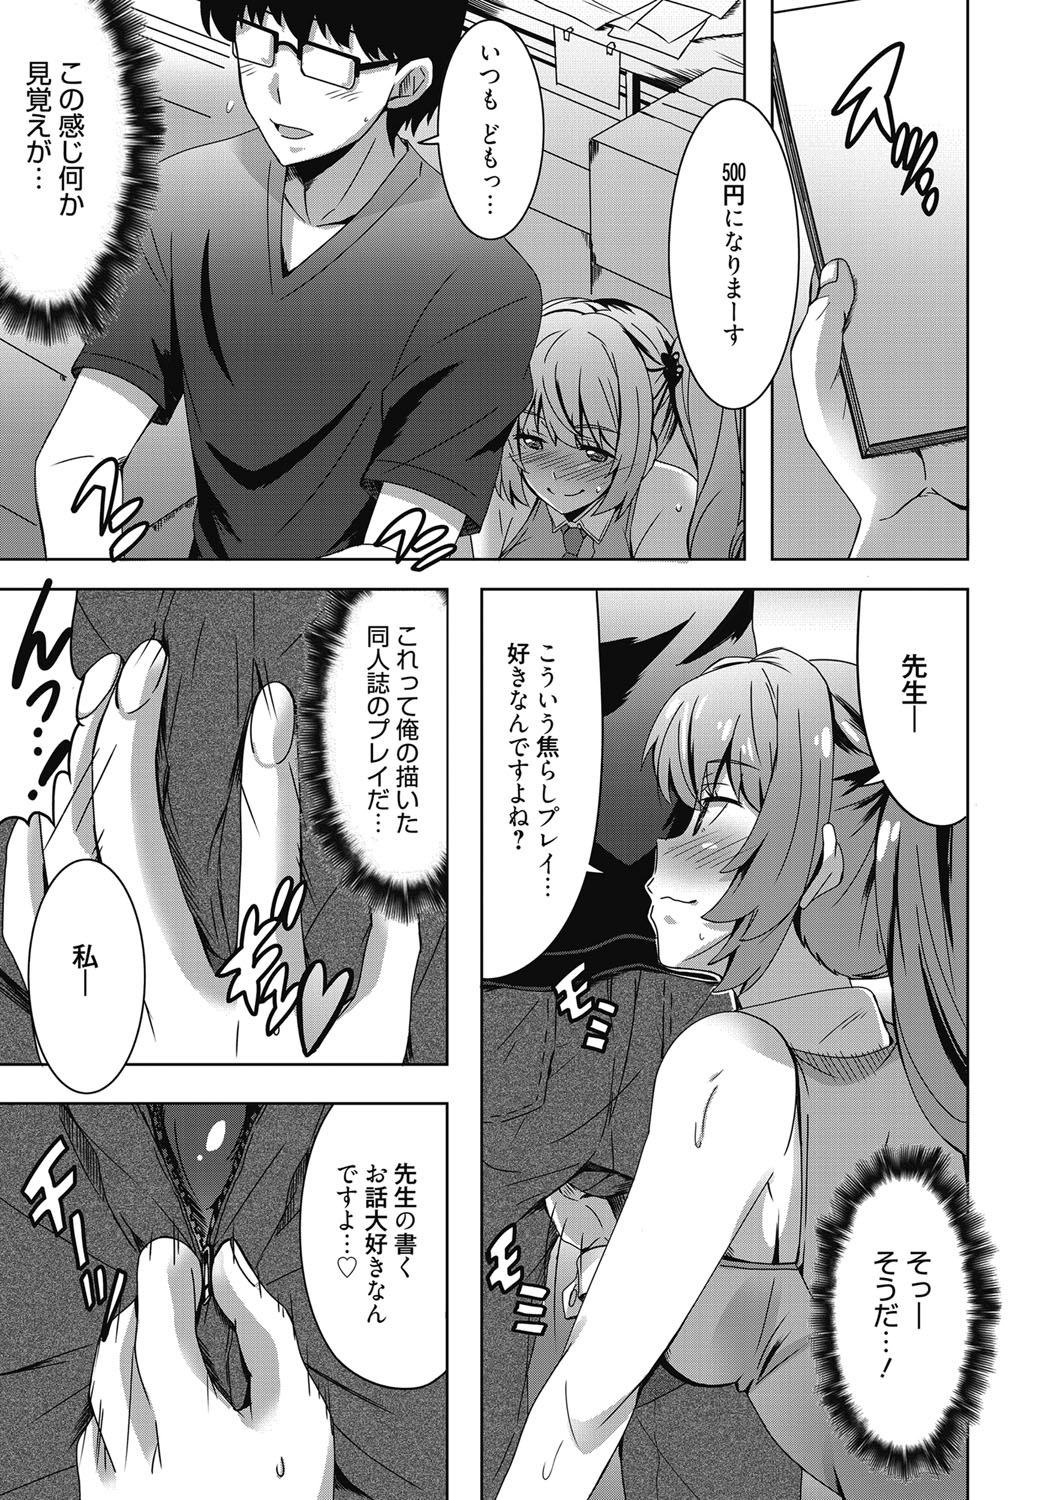 Web Manga Bangaichi Vol. 24 page 50 full